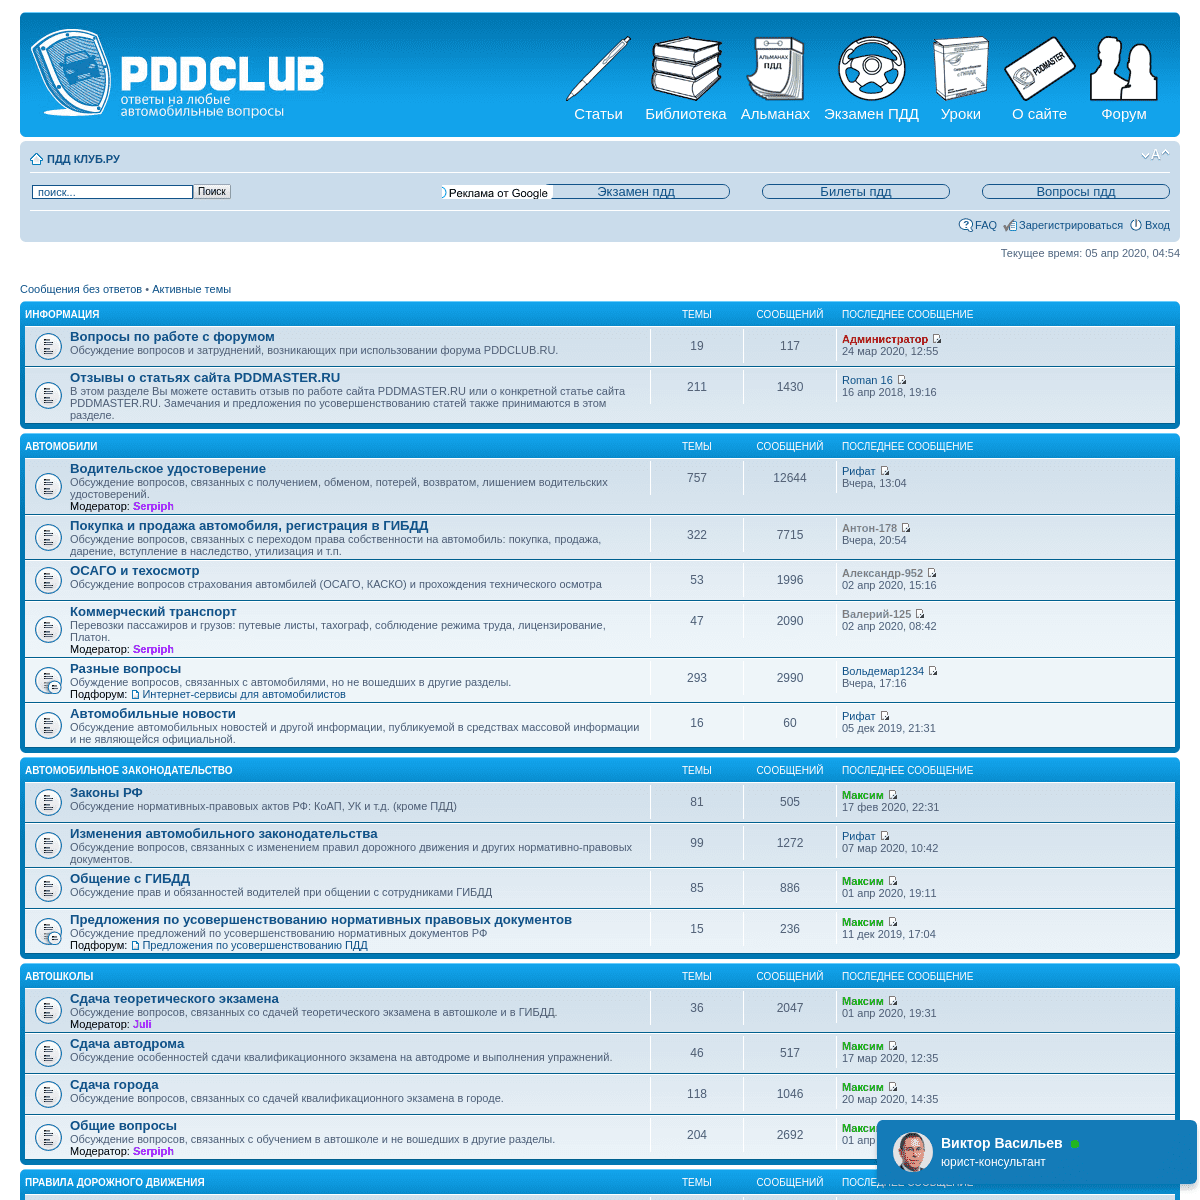 A complete backup of pddclub.ru